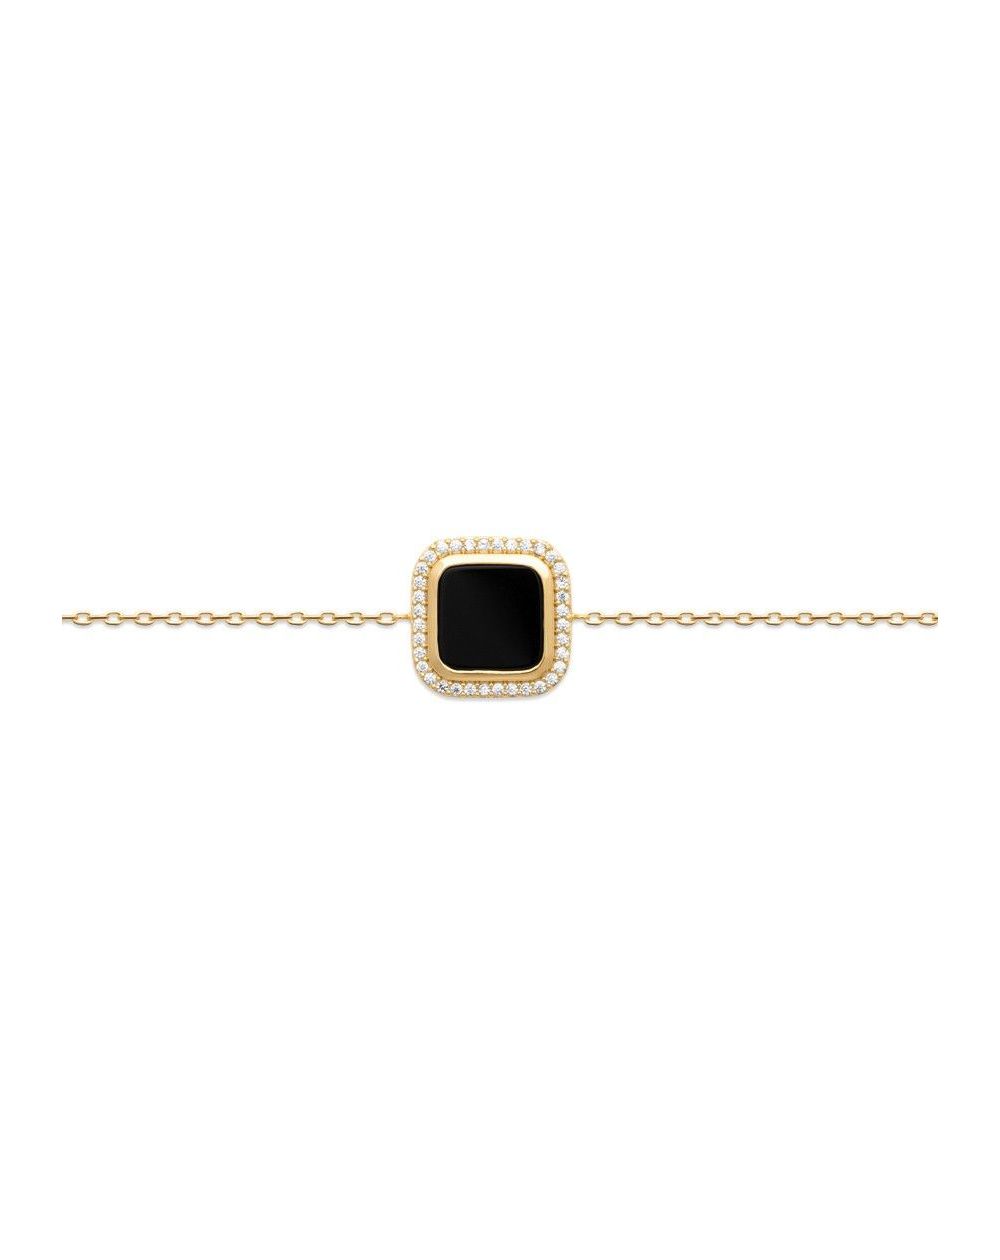 Bracelet carré agate noire pour femme - Bracelet en plaqué or